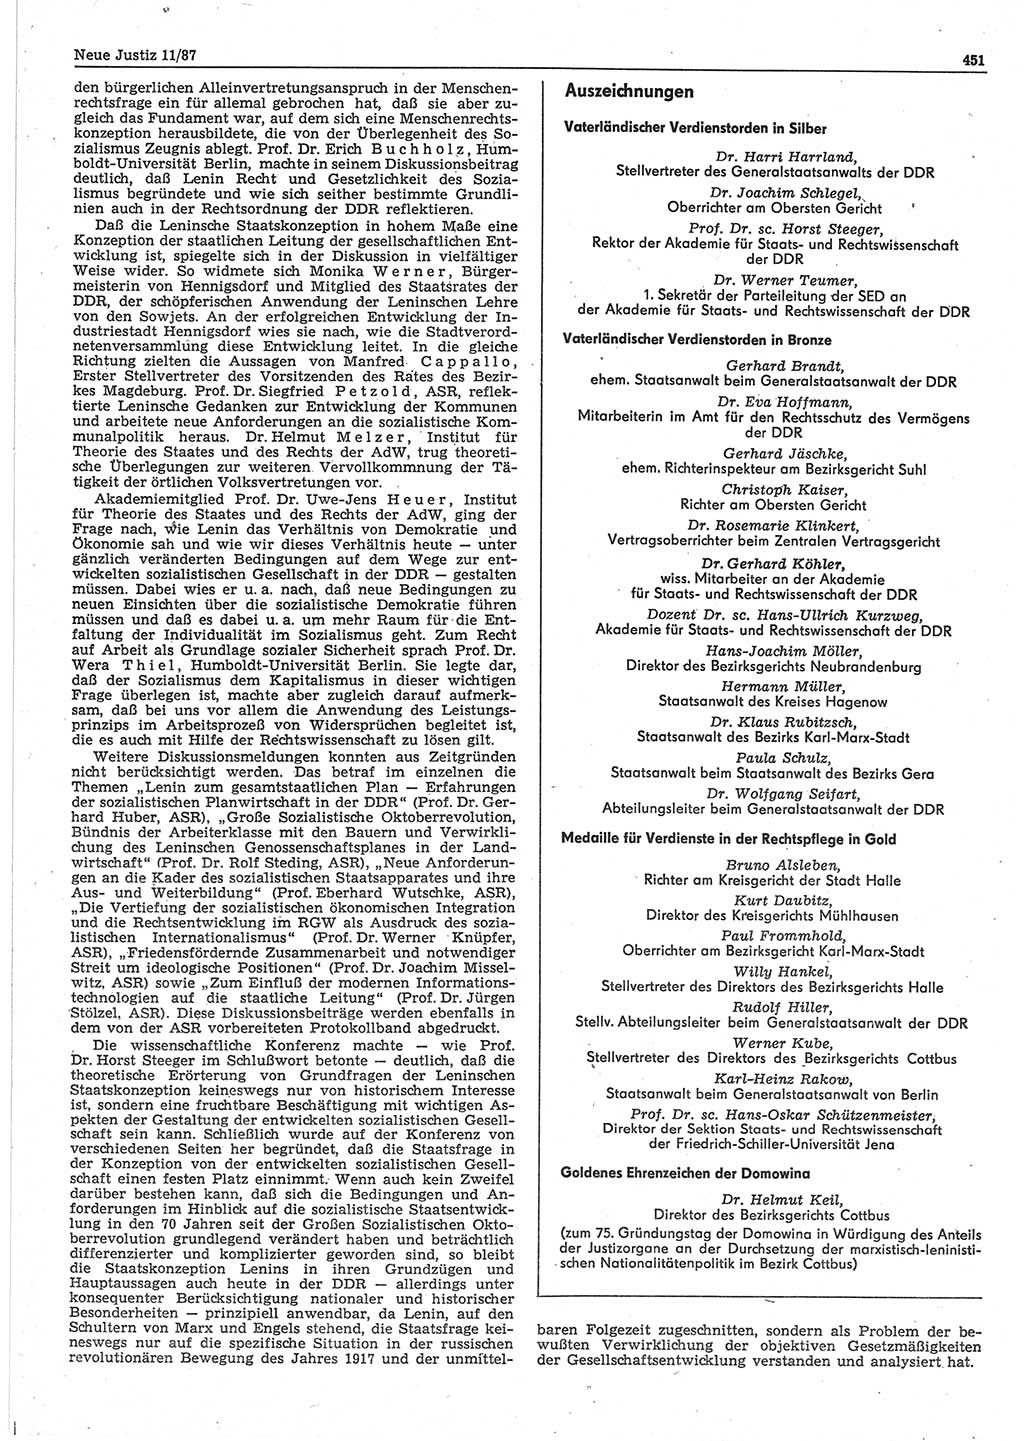 Neue Justiz (NJ), Zeitschrift für sozialistisches Recht und Gesetzlichkeit [Deutsche Demokratische Republik (DDR)], 41. Jahrgang 1987, Seite 451 (NJ DDR 1987, S. 451)